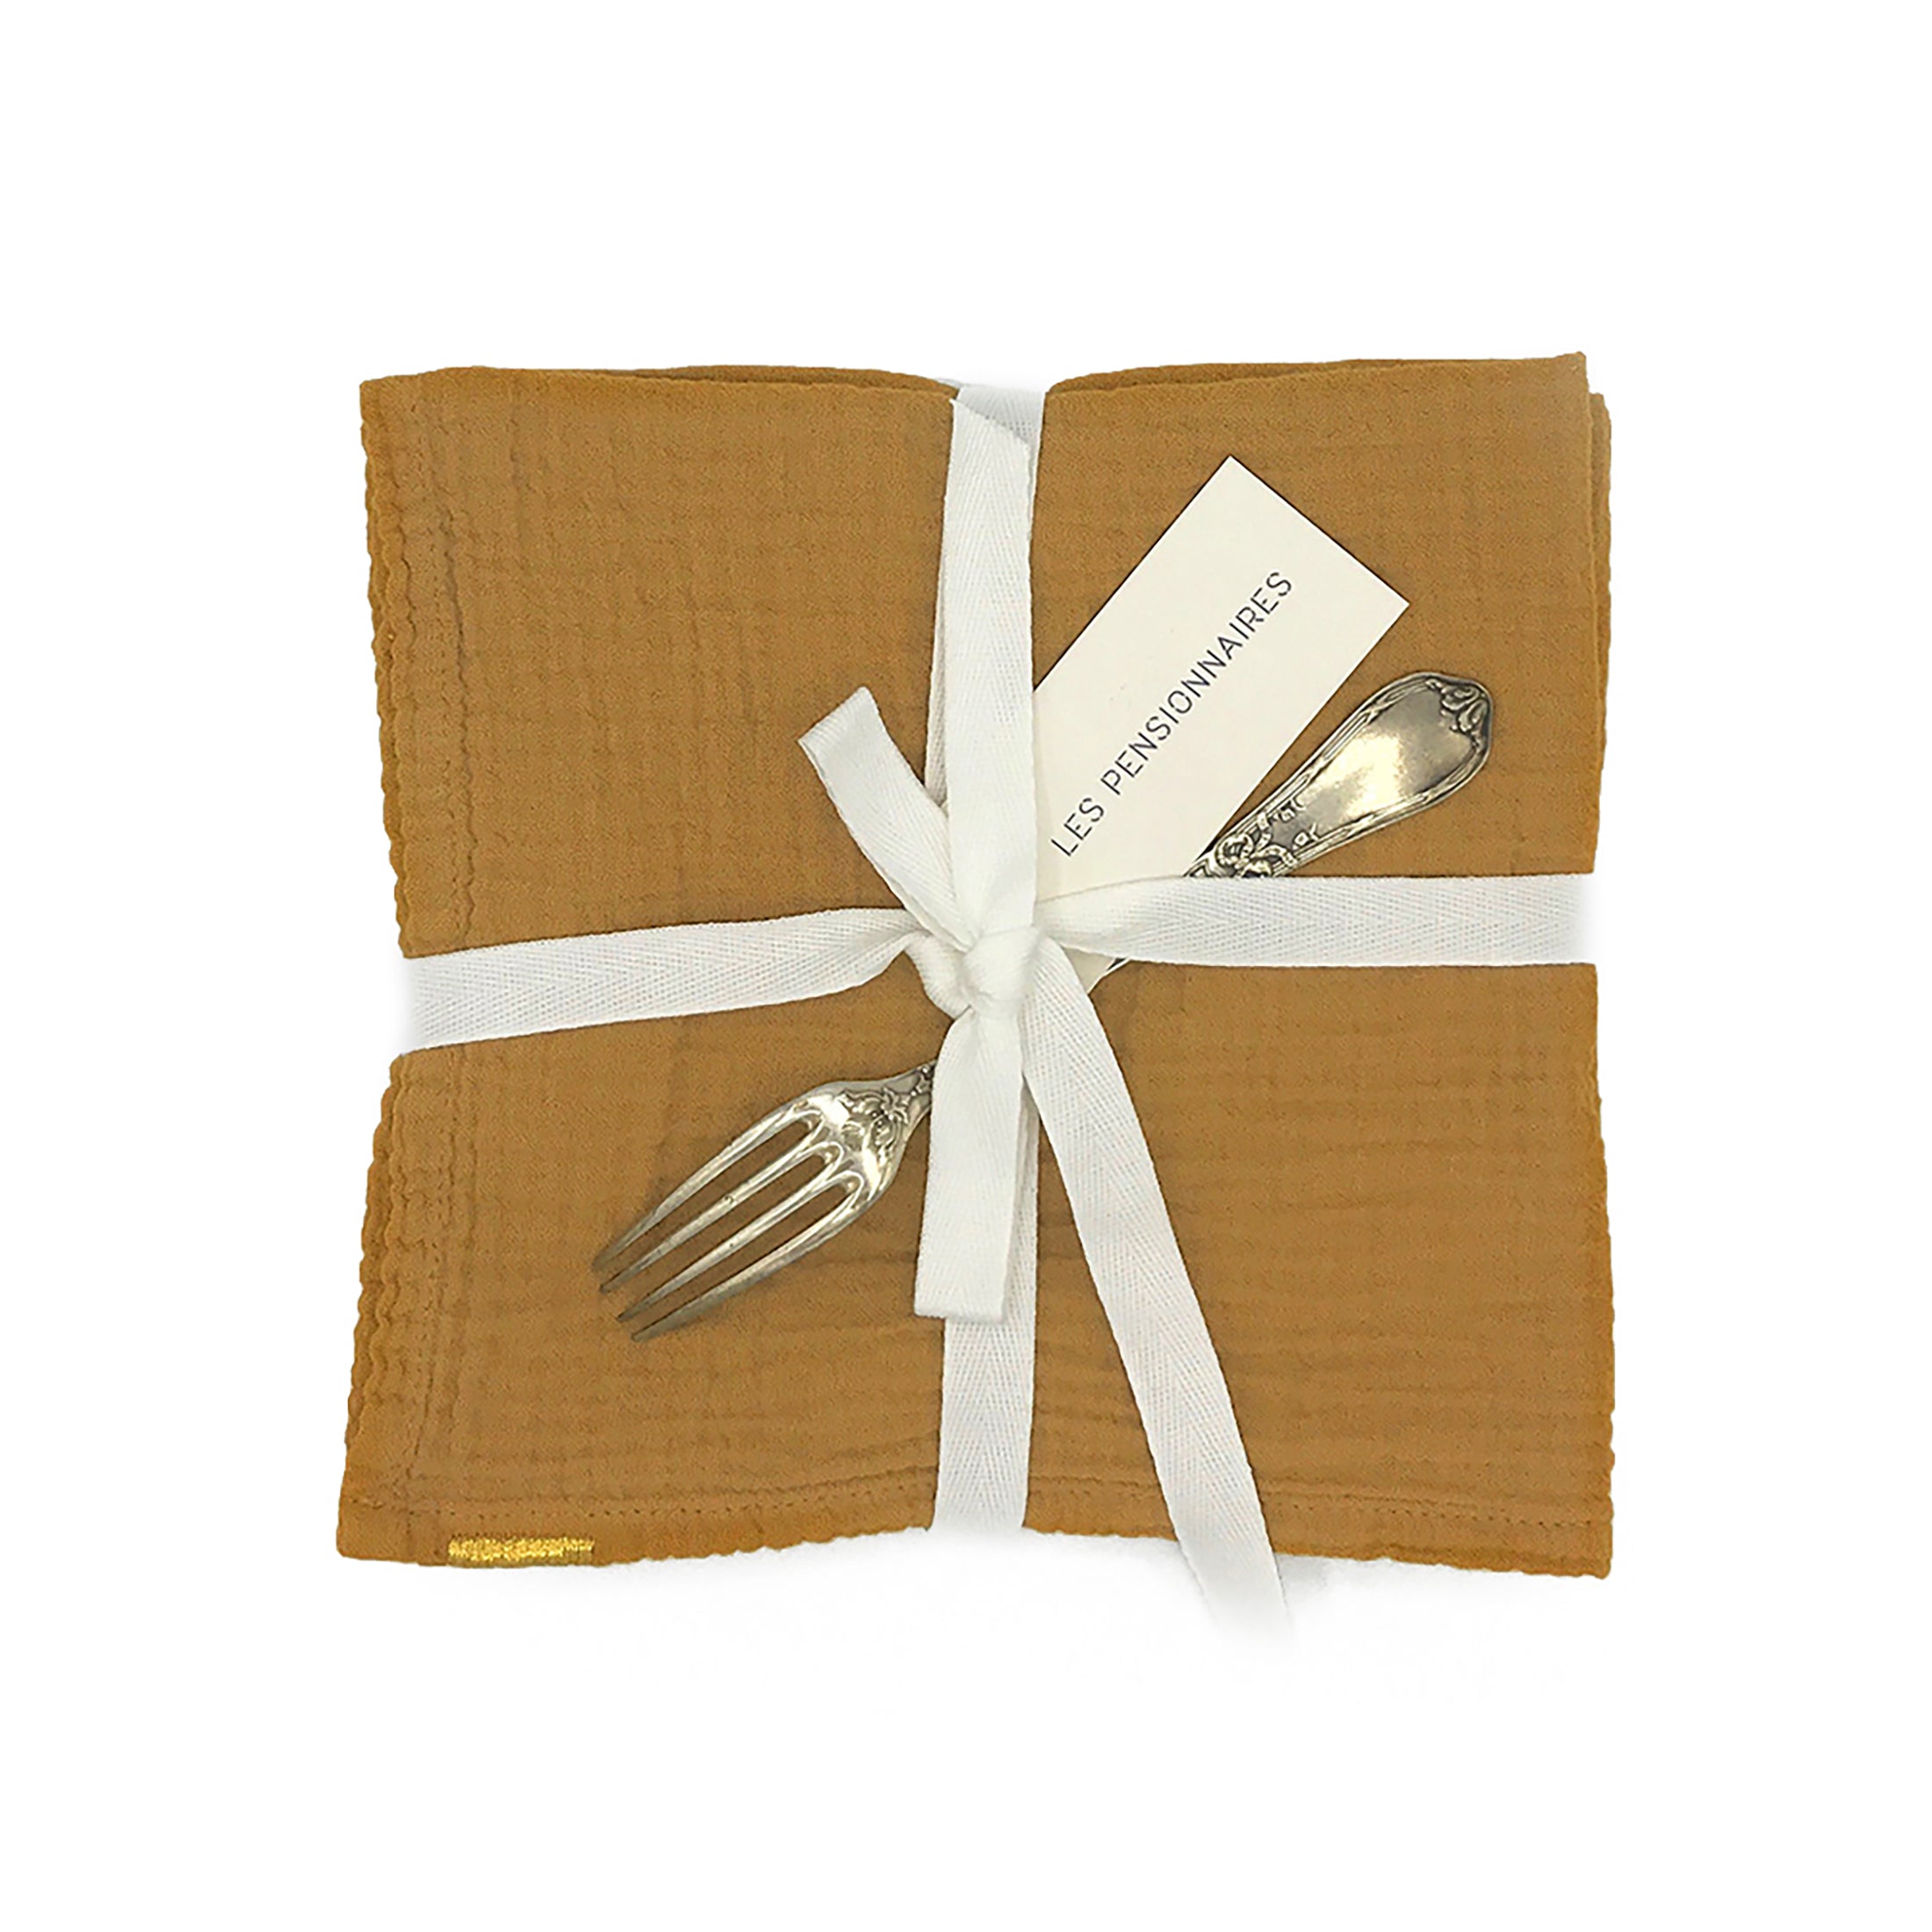 Herring & Bones - Concept Store Joyeux - Les Pensionnaires - Serviettes de table - Lot de 2 serviettes de table en double gaze de coton